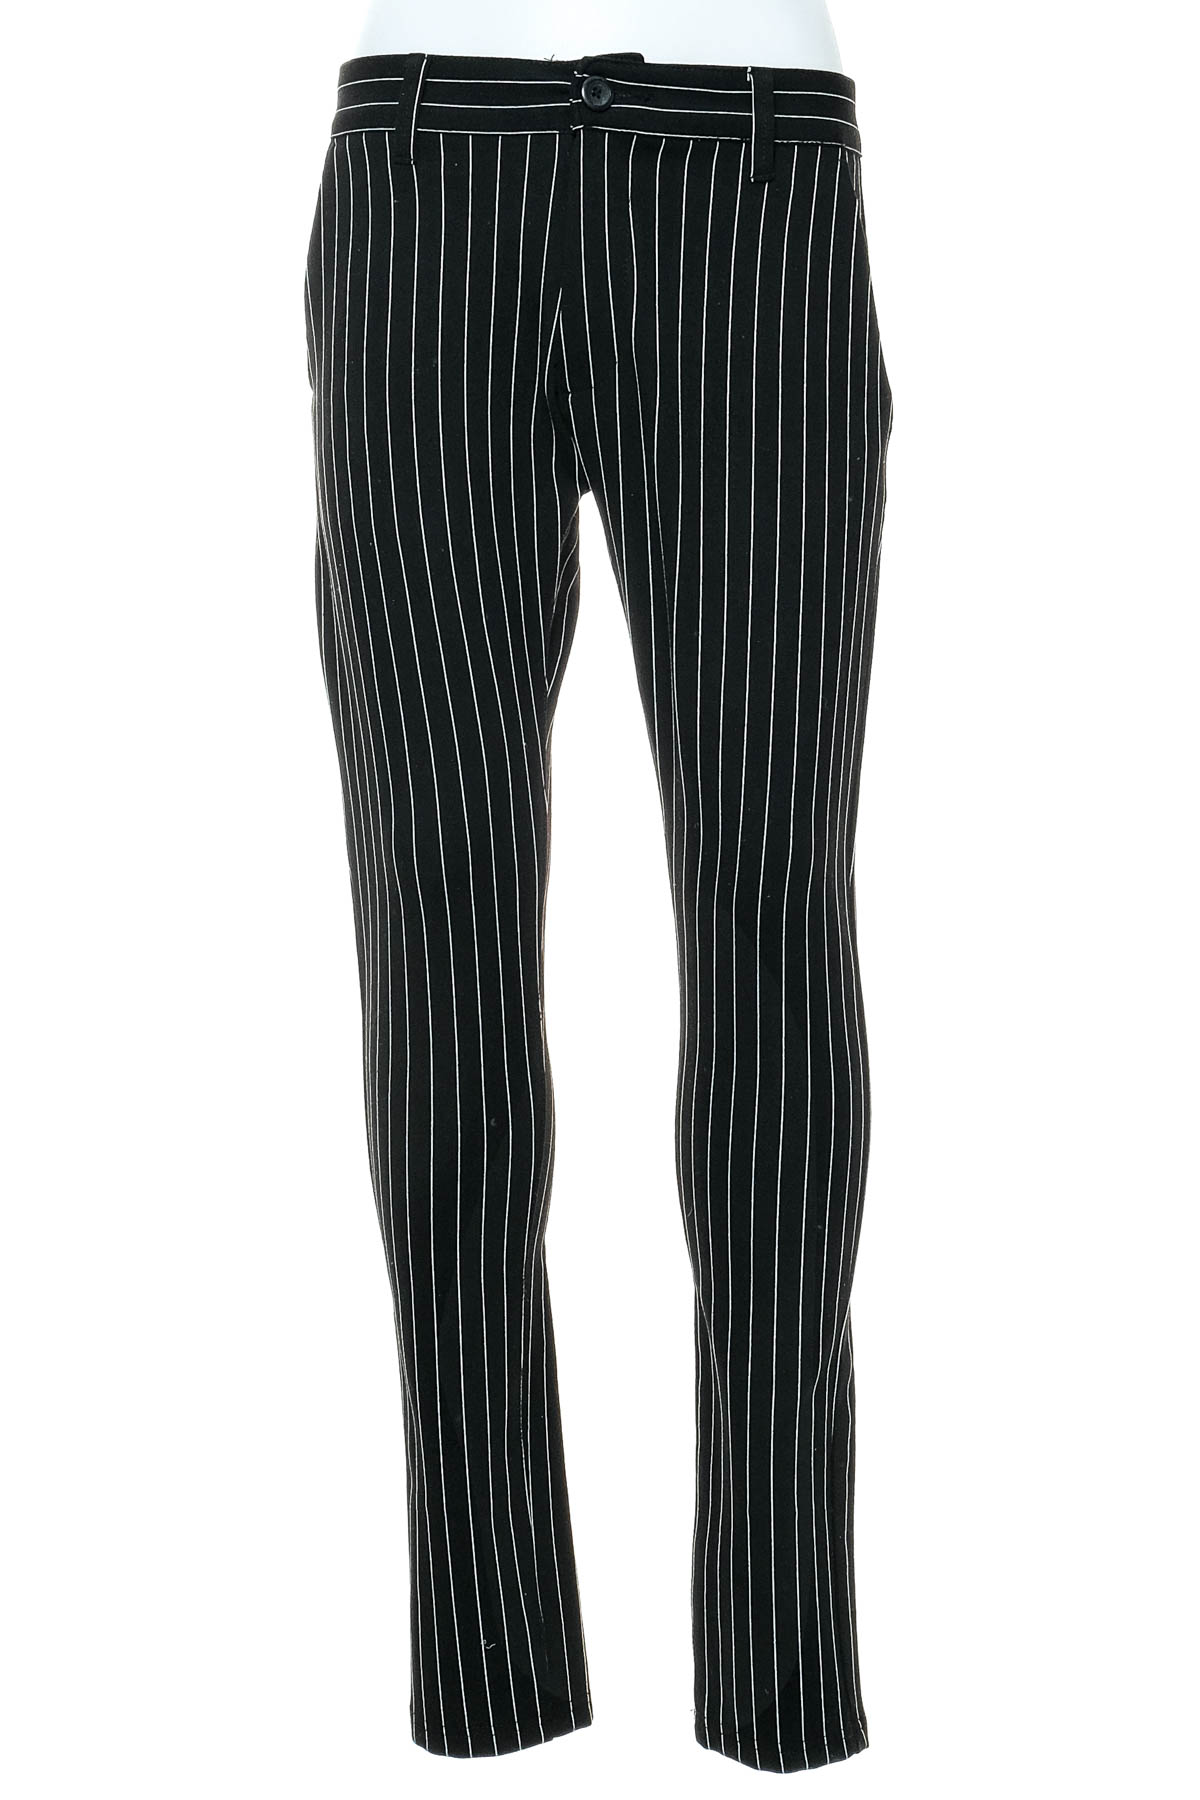 Men's trousers - DENIM PROJECT - 0